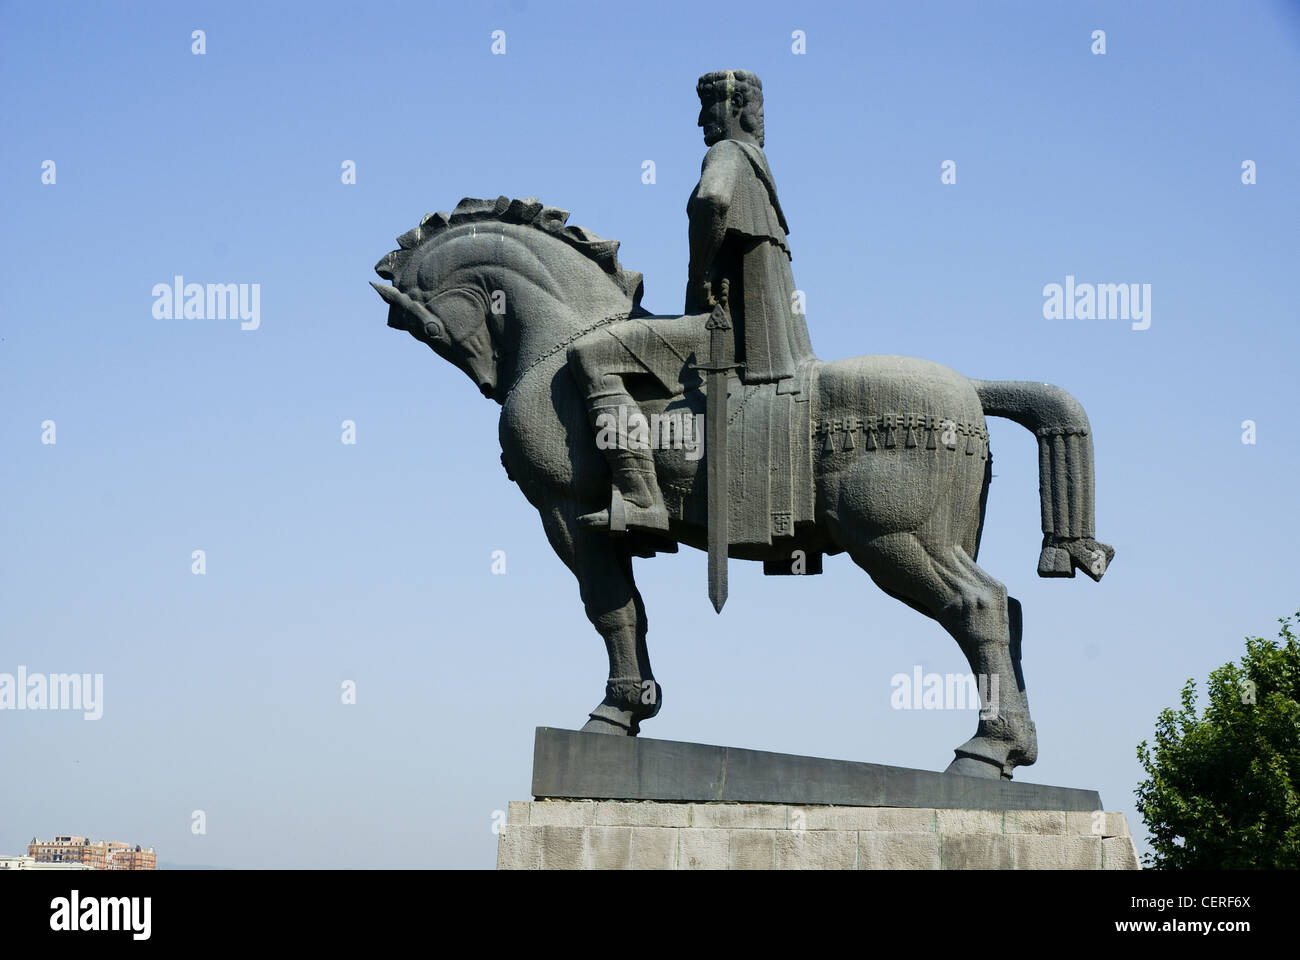 Georgia, Tbilisi, Statue of King Gorgasali Stock Photo